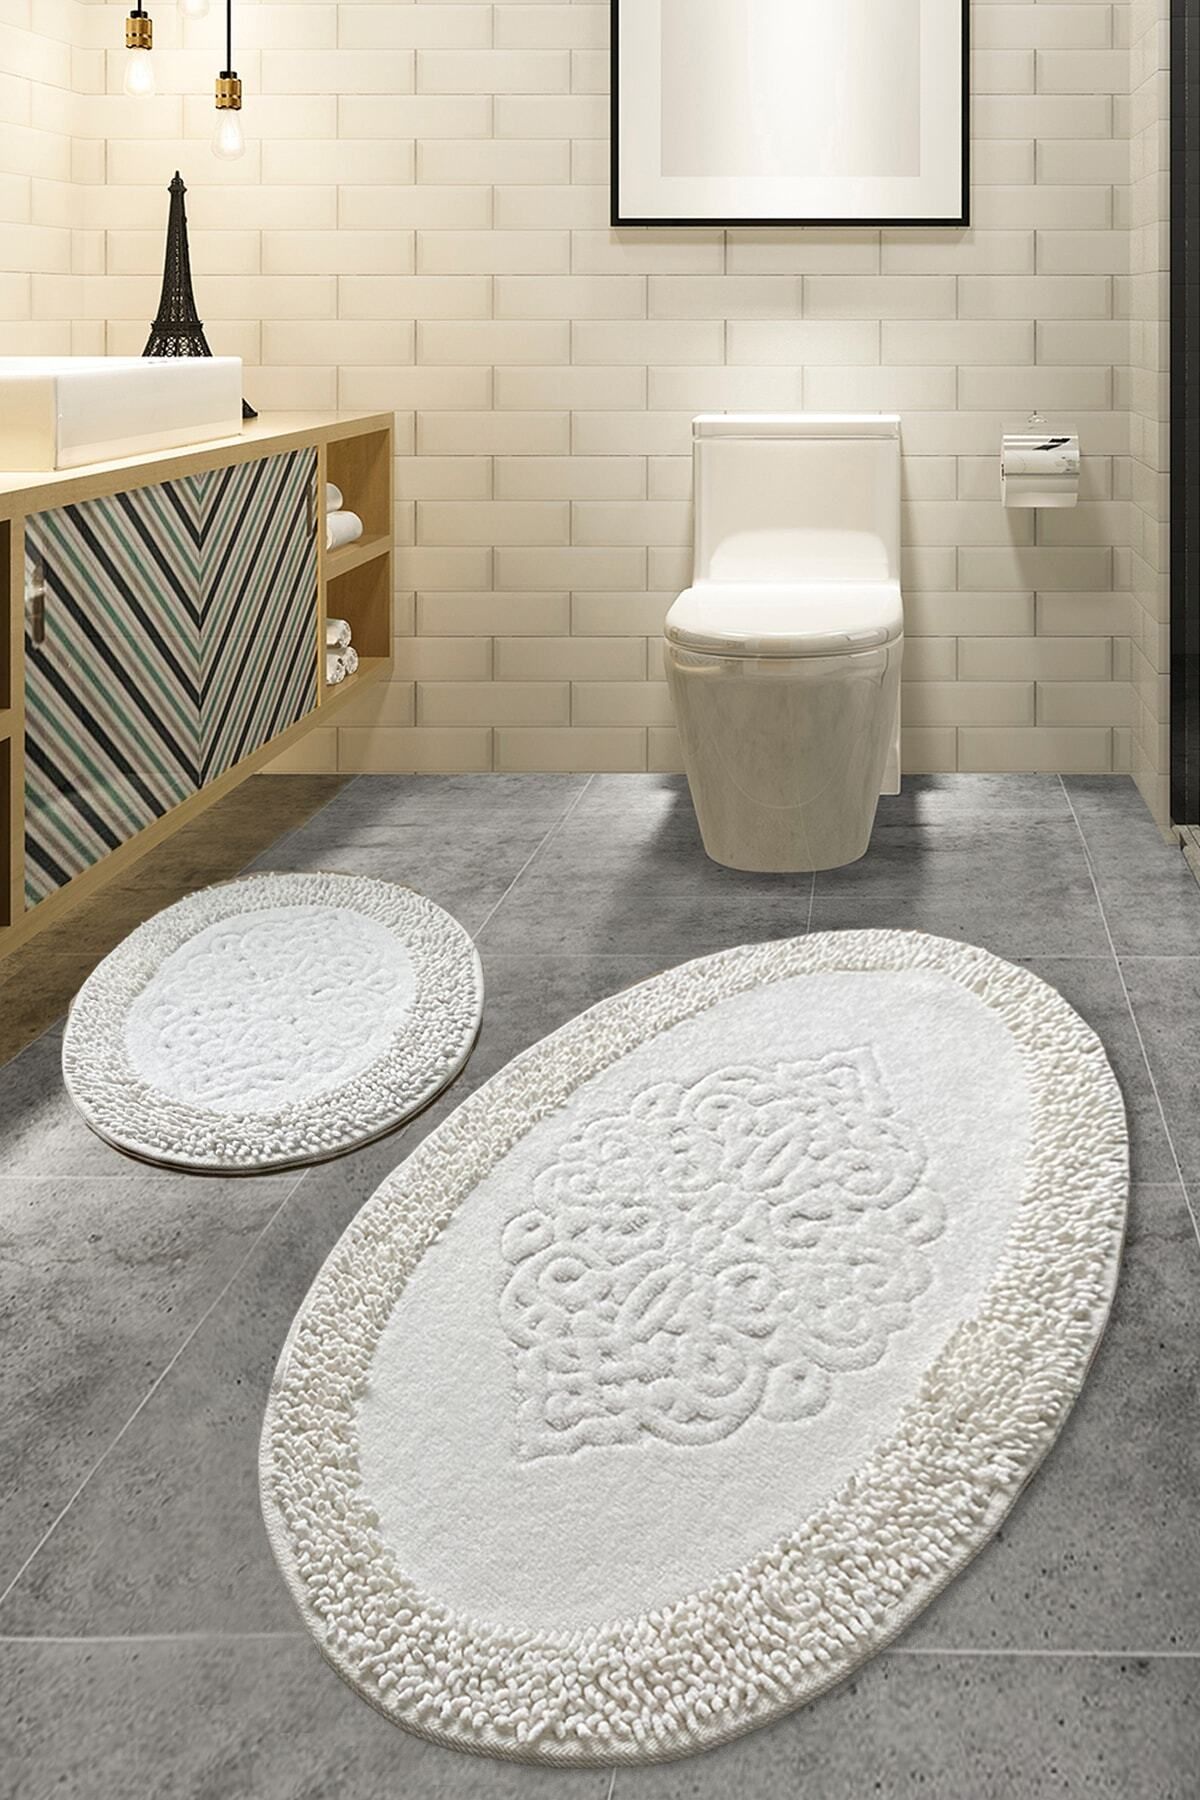 Chilai Home Pıante Oval Cotton Ekru 2'li Set Pamuklu Banyo Paspas Seti